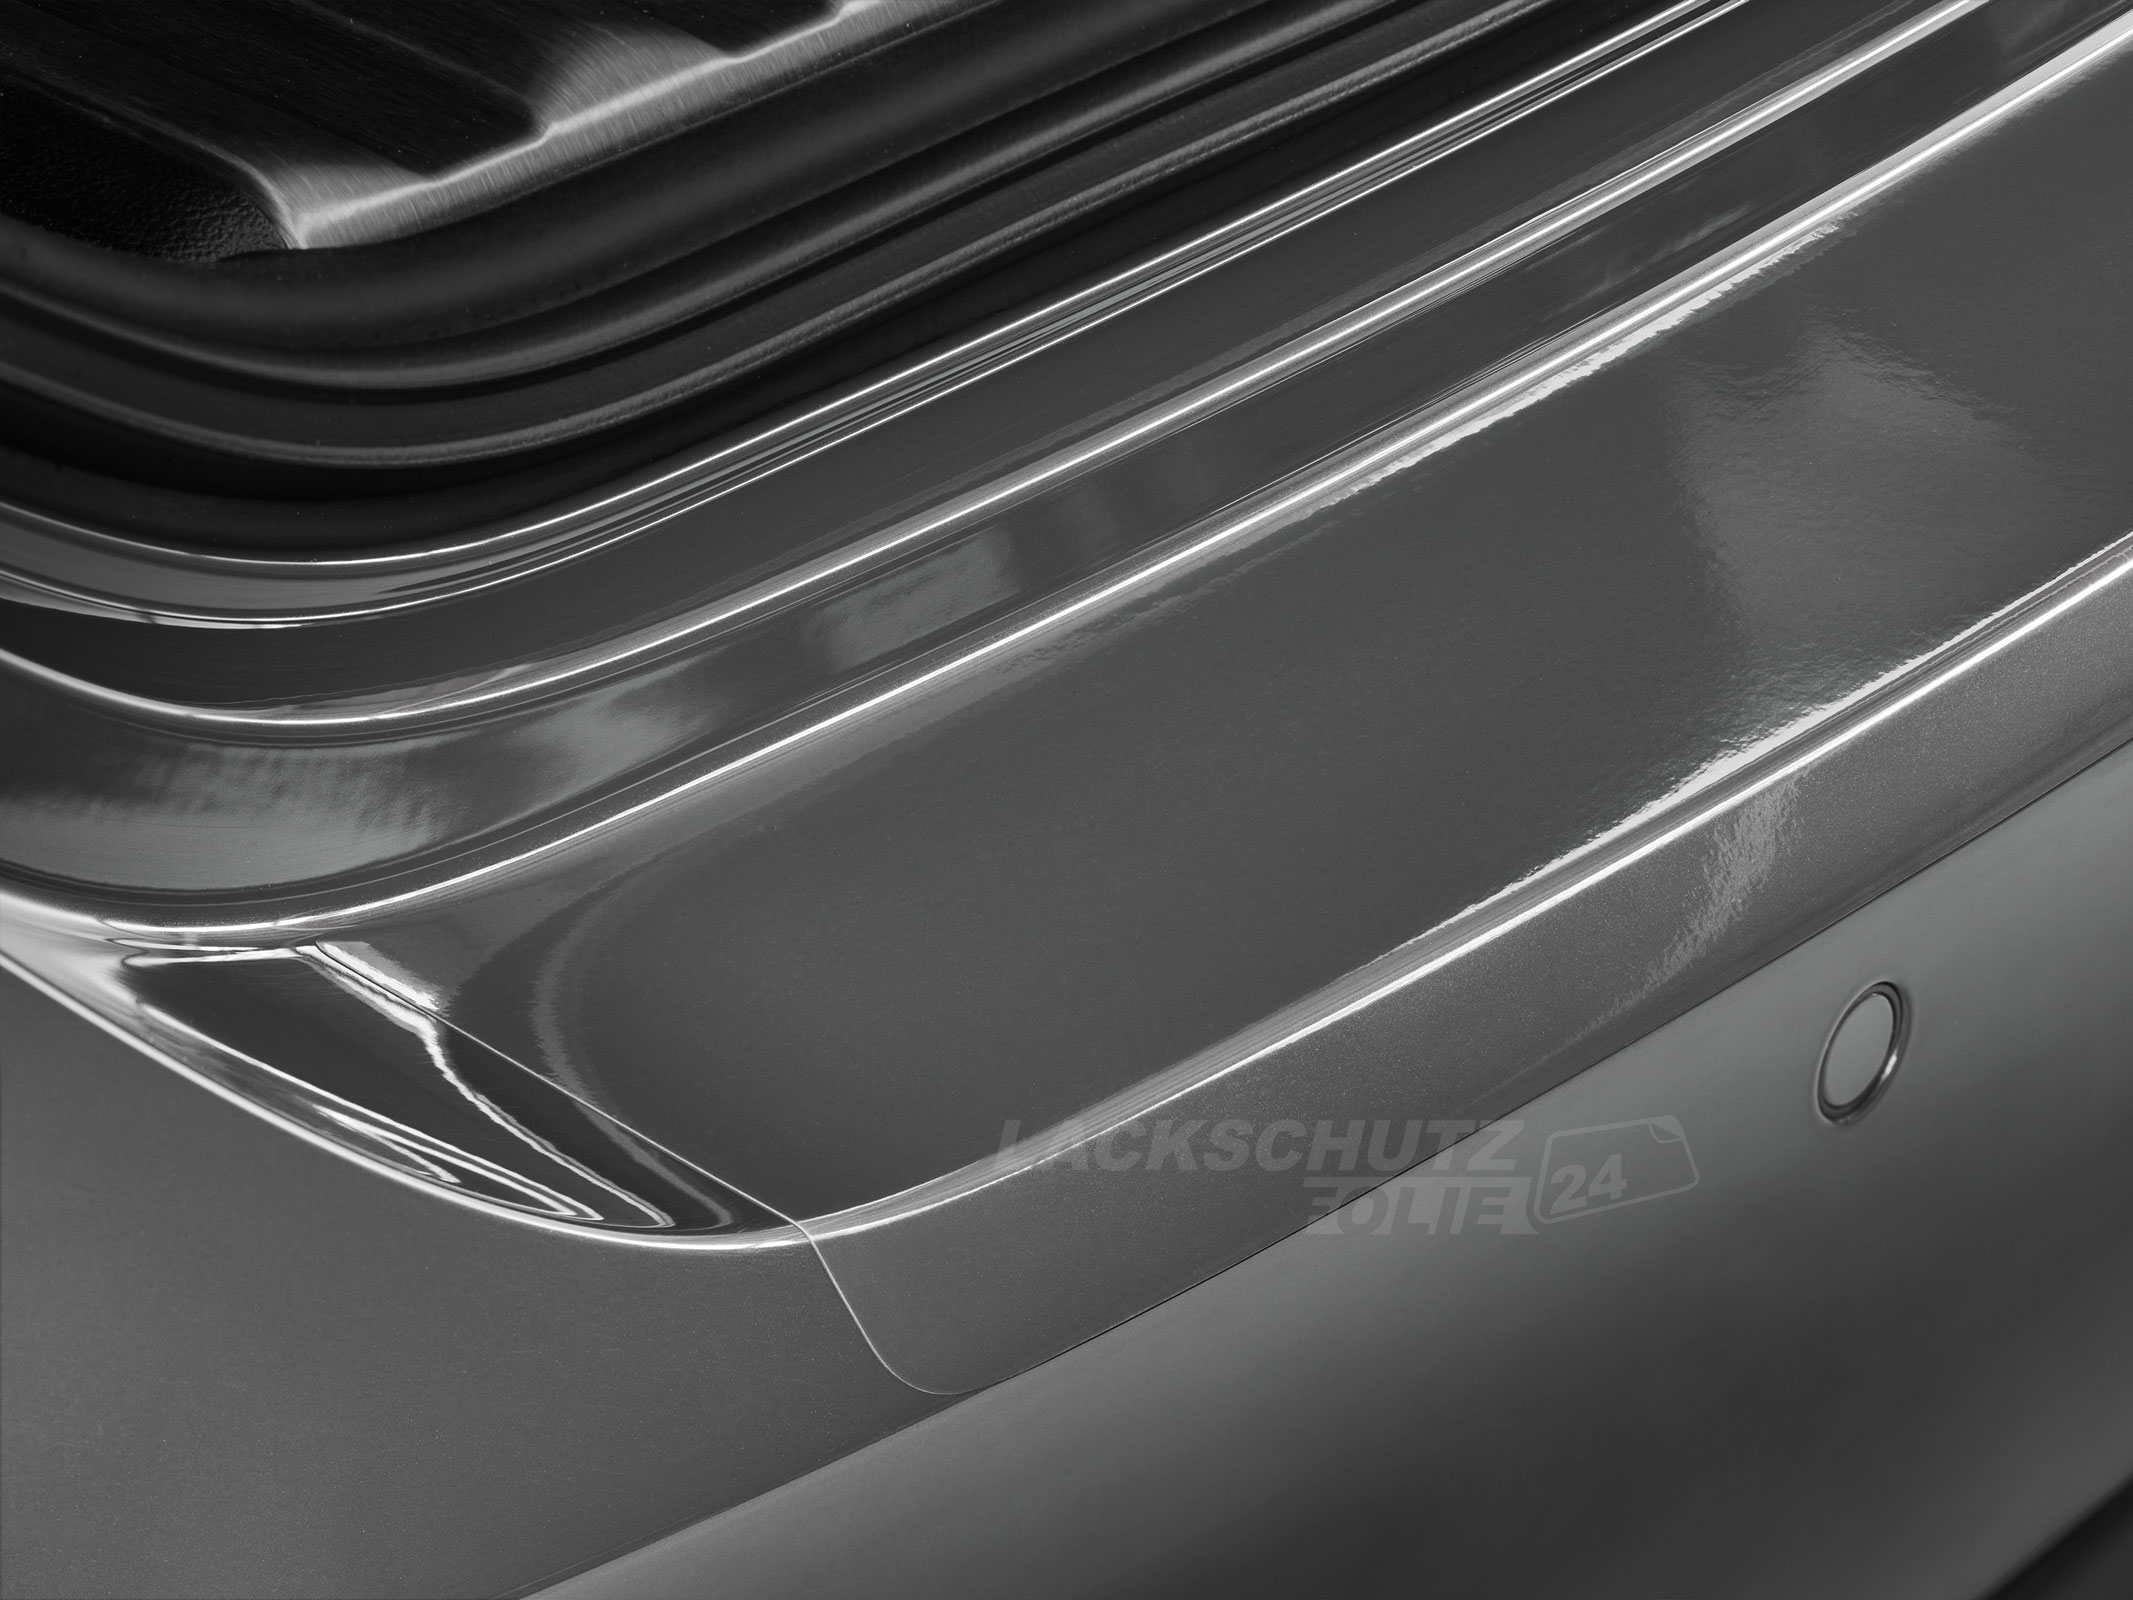 Ladekantenschutzfolie - Transparent Glatt Hochglänzend 240 µm stark für Ford C-Max (I) BJ 2003-10/2010